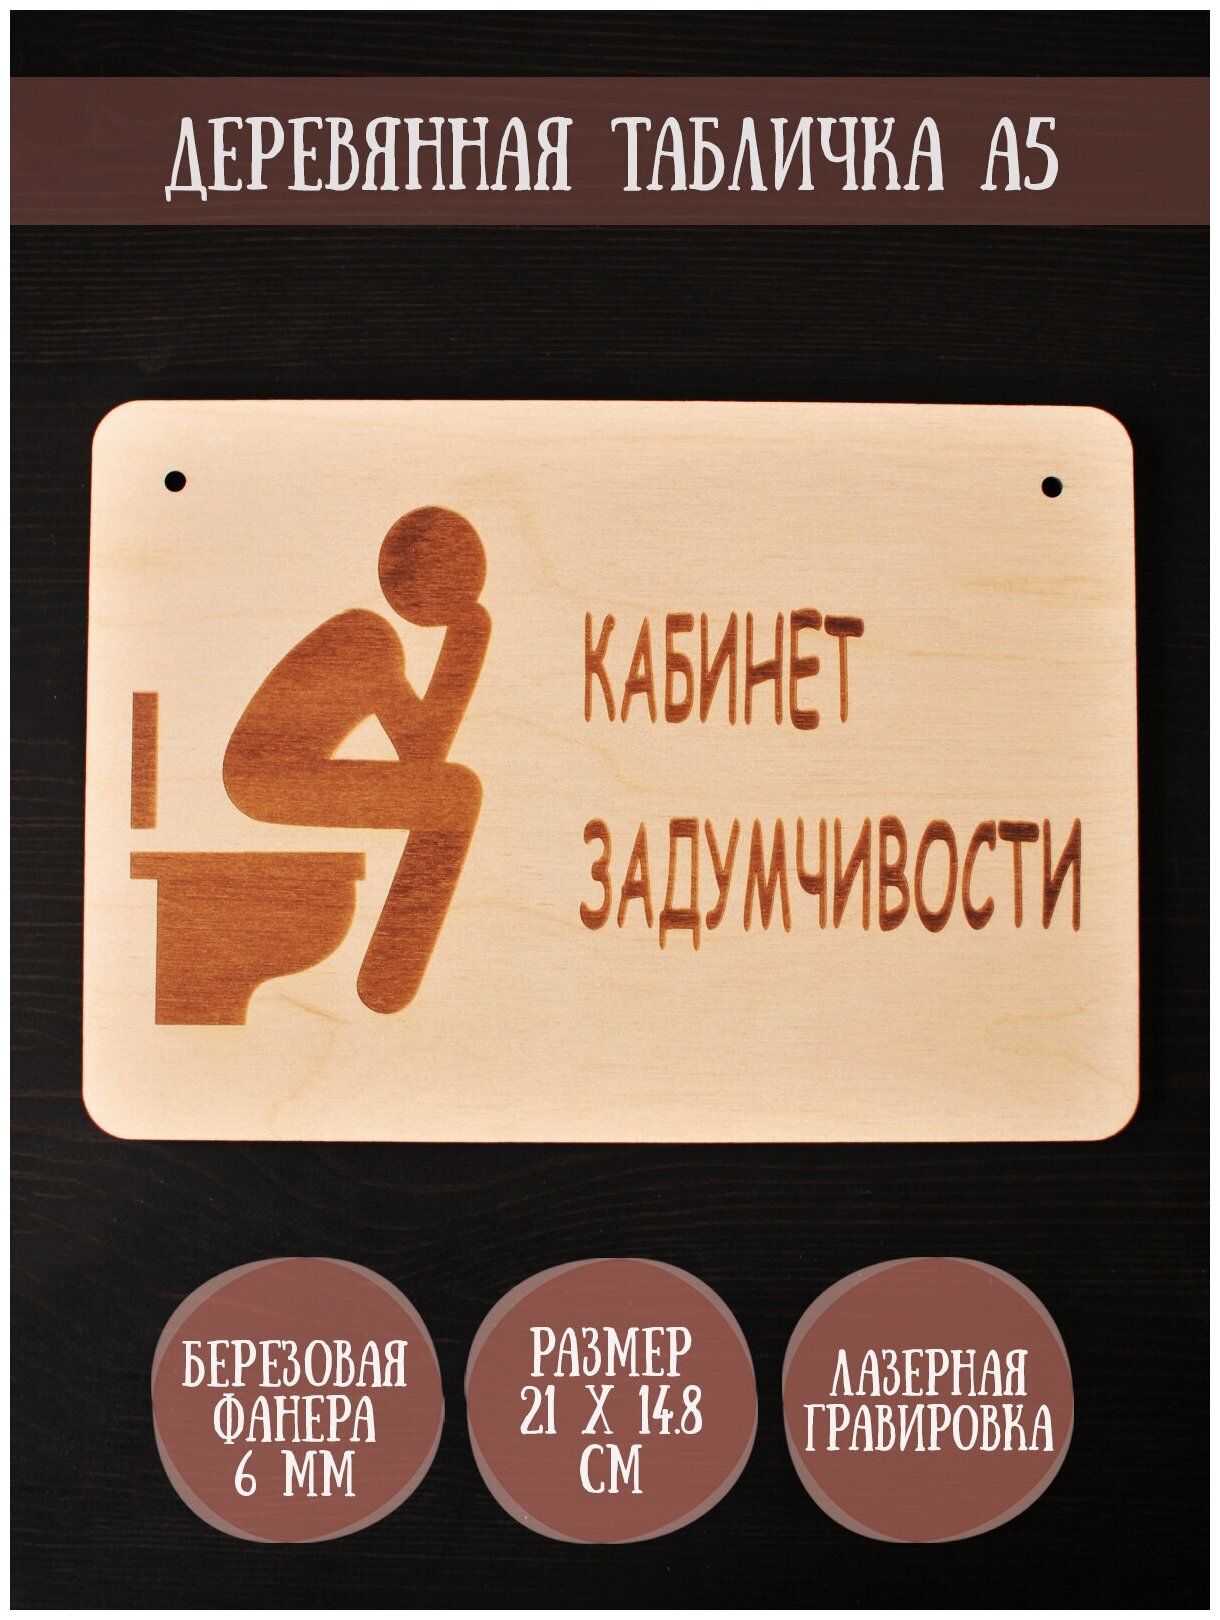 Табличка в туалет Riform "Кабинет задумчивости" гравировка формат А5 (21 х 14.8 см) березовая фанера 6 мм